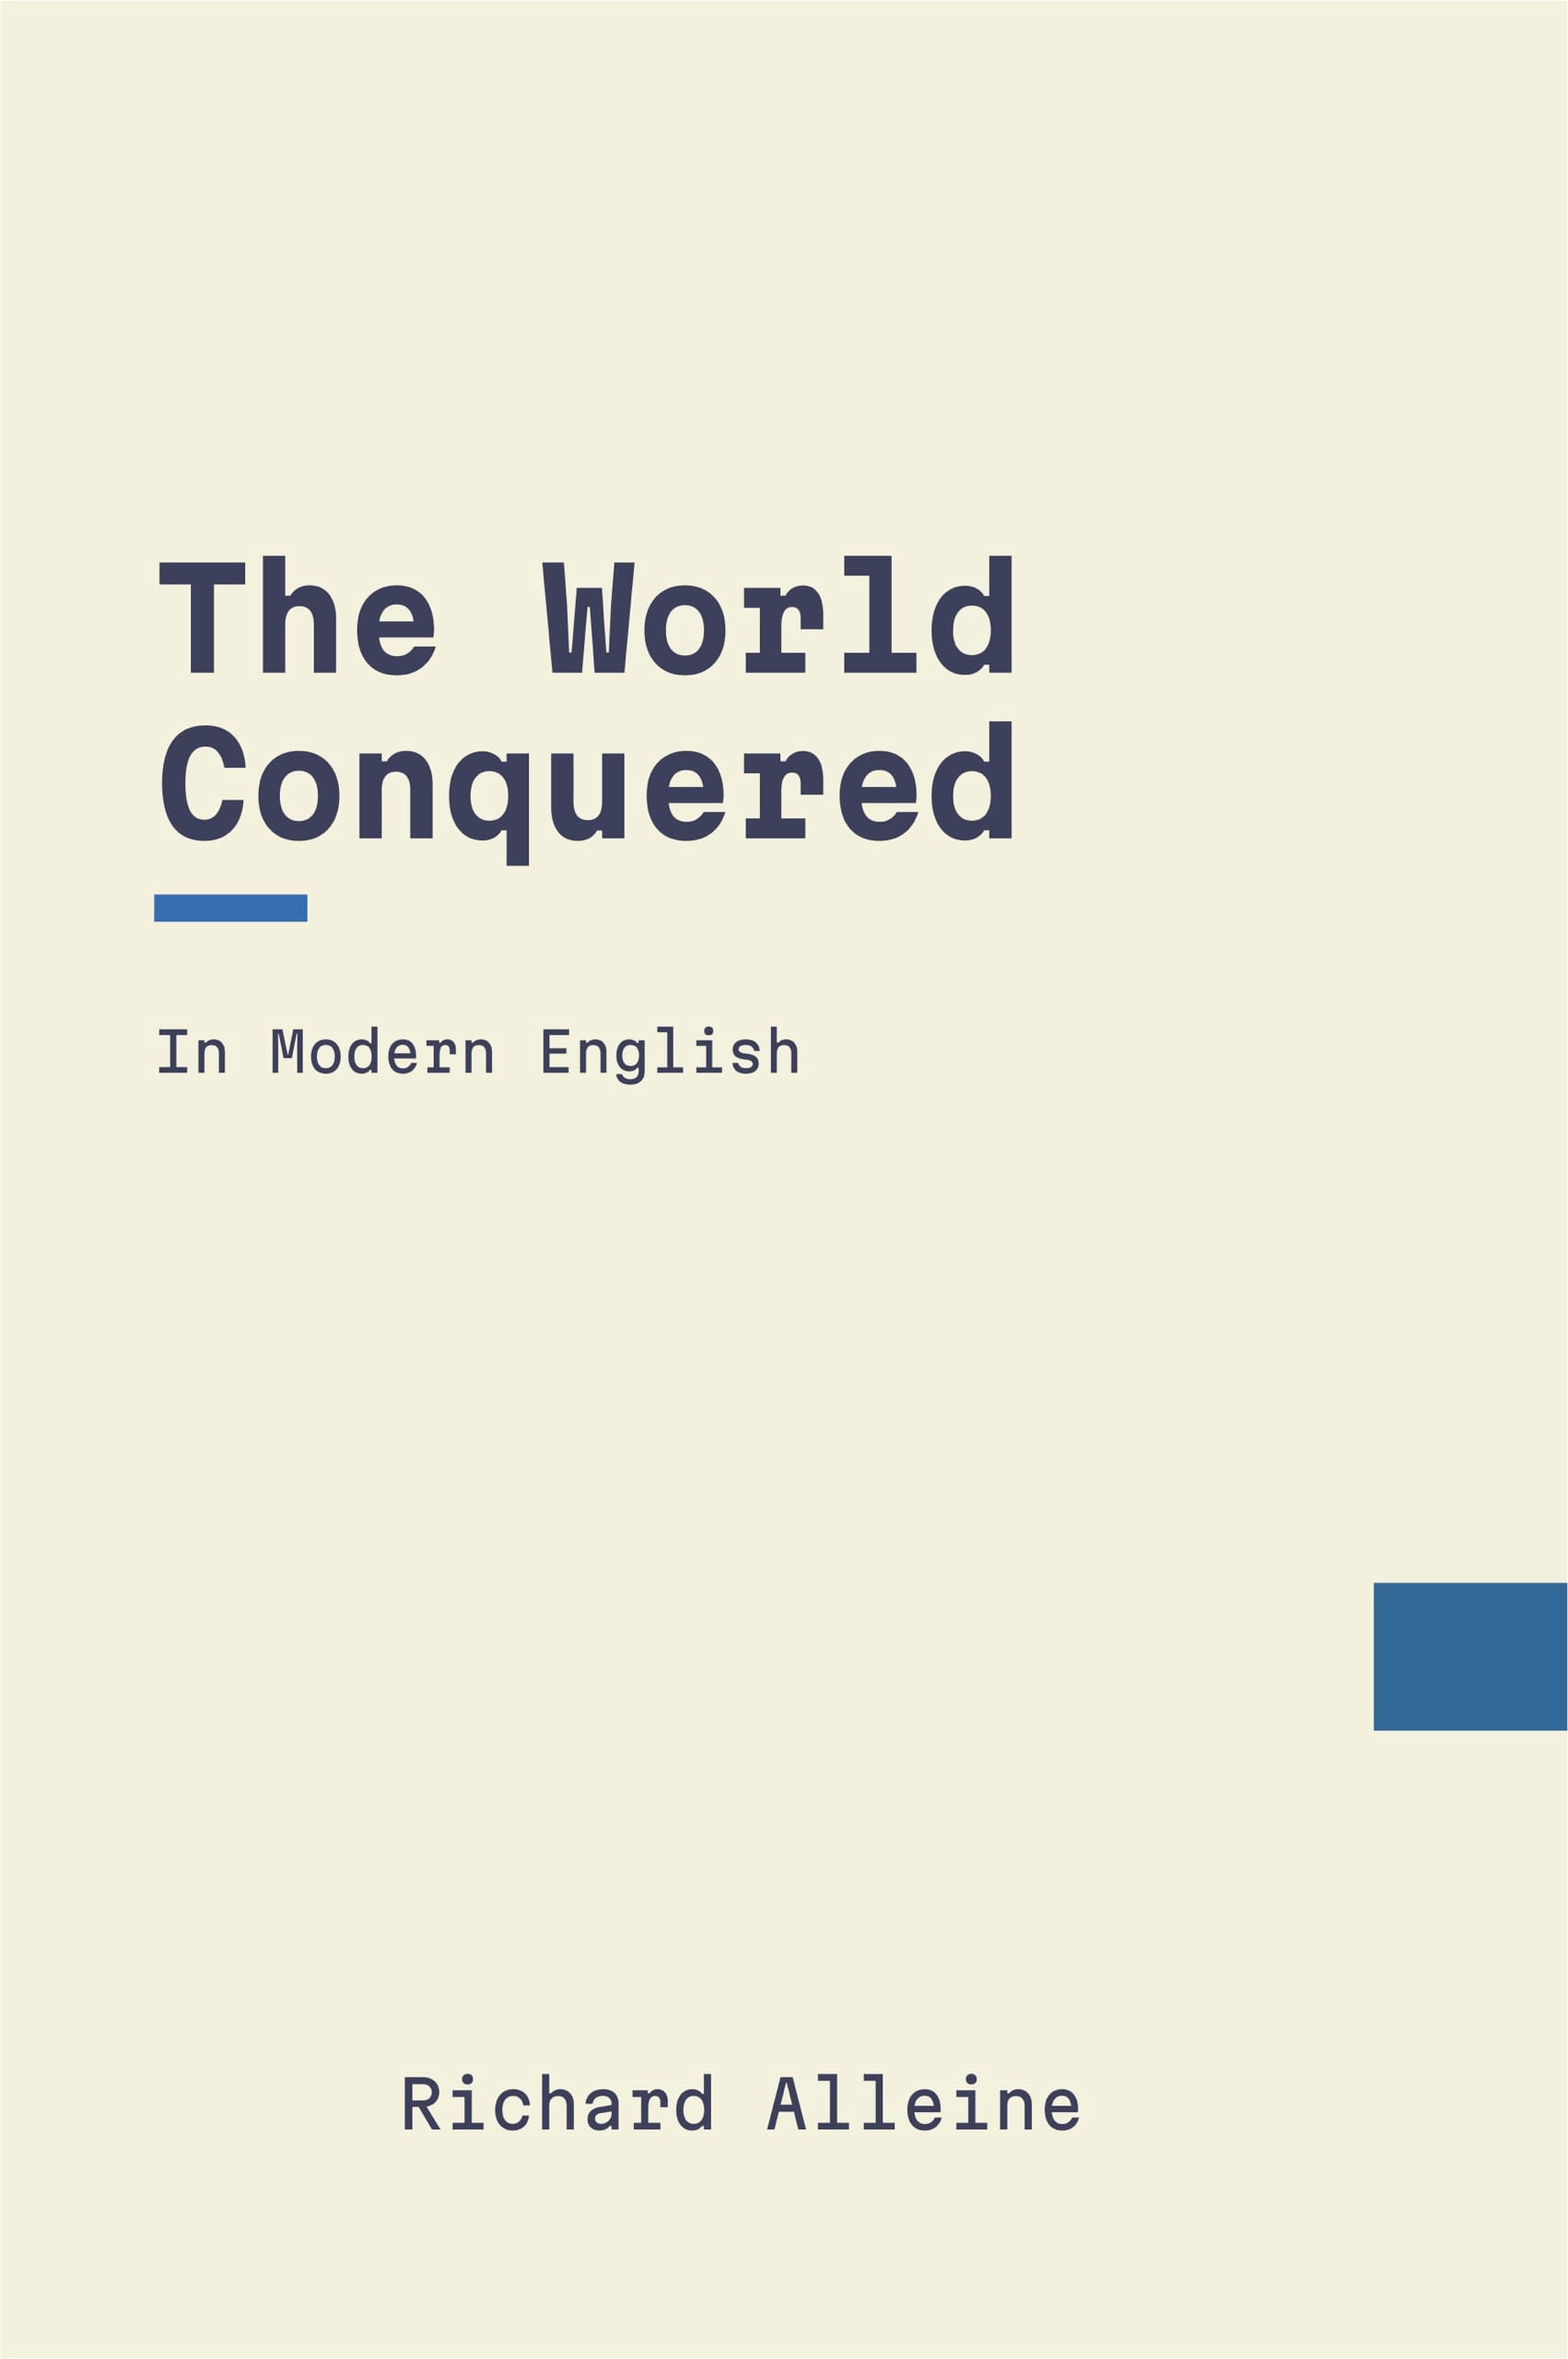 The World Conquered by Richard Alleine